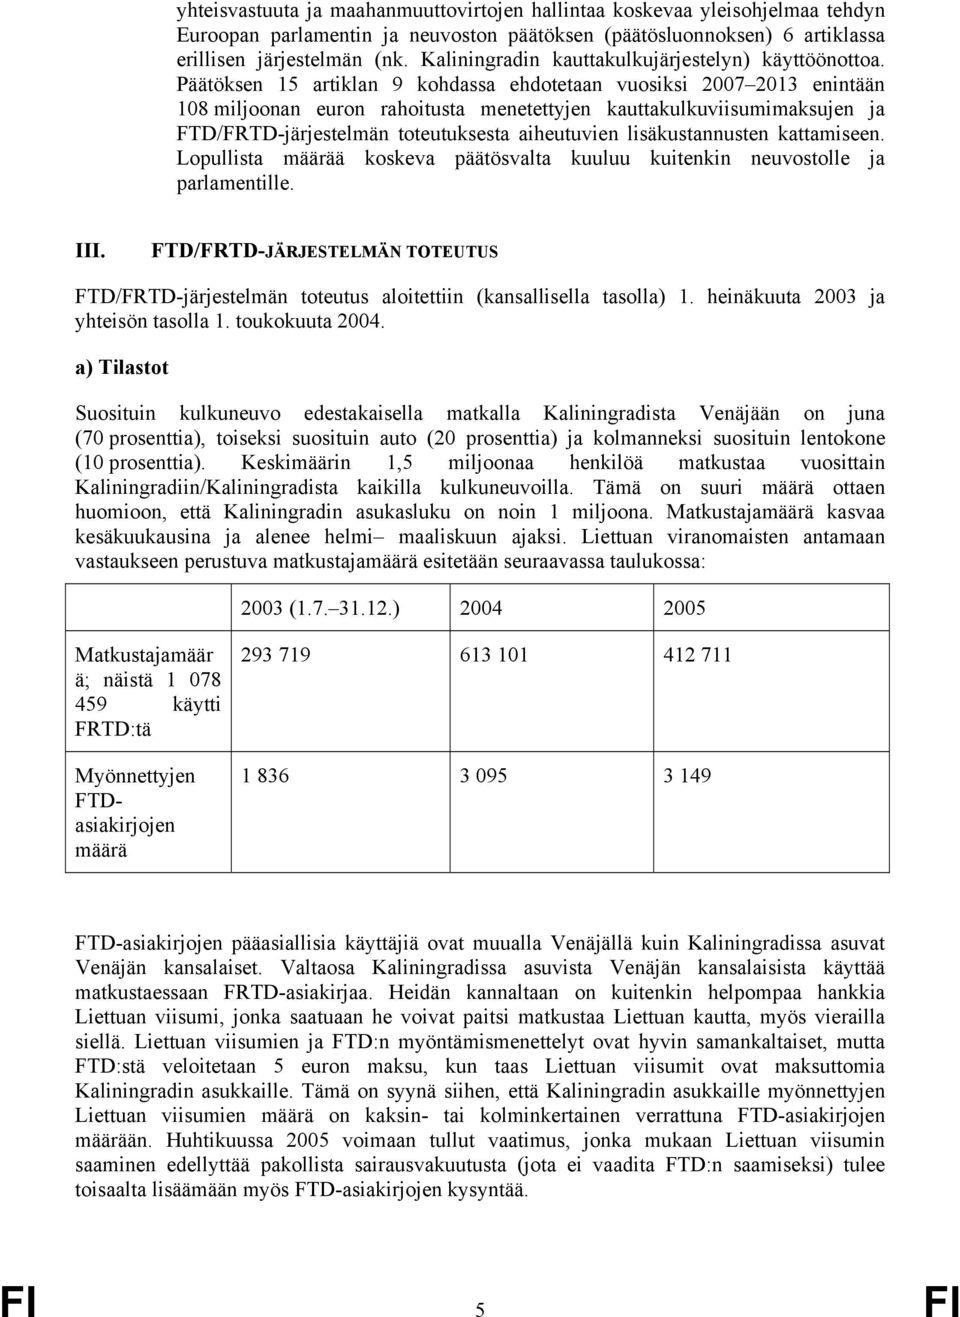 Päätöksen 15 artiklan 9 kohdassa ehdotetaan vuosiksi 2007 2013 enintään 108 miljoonan euron rahoitusta menetettyjen kauttakulkuviisumimaksujen ja FTD/FRTD-järjestelmän toteutuksesta aiheutuvien